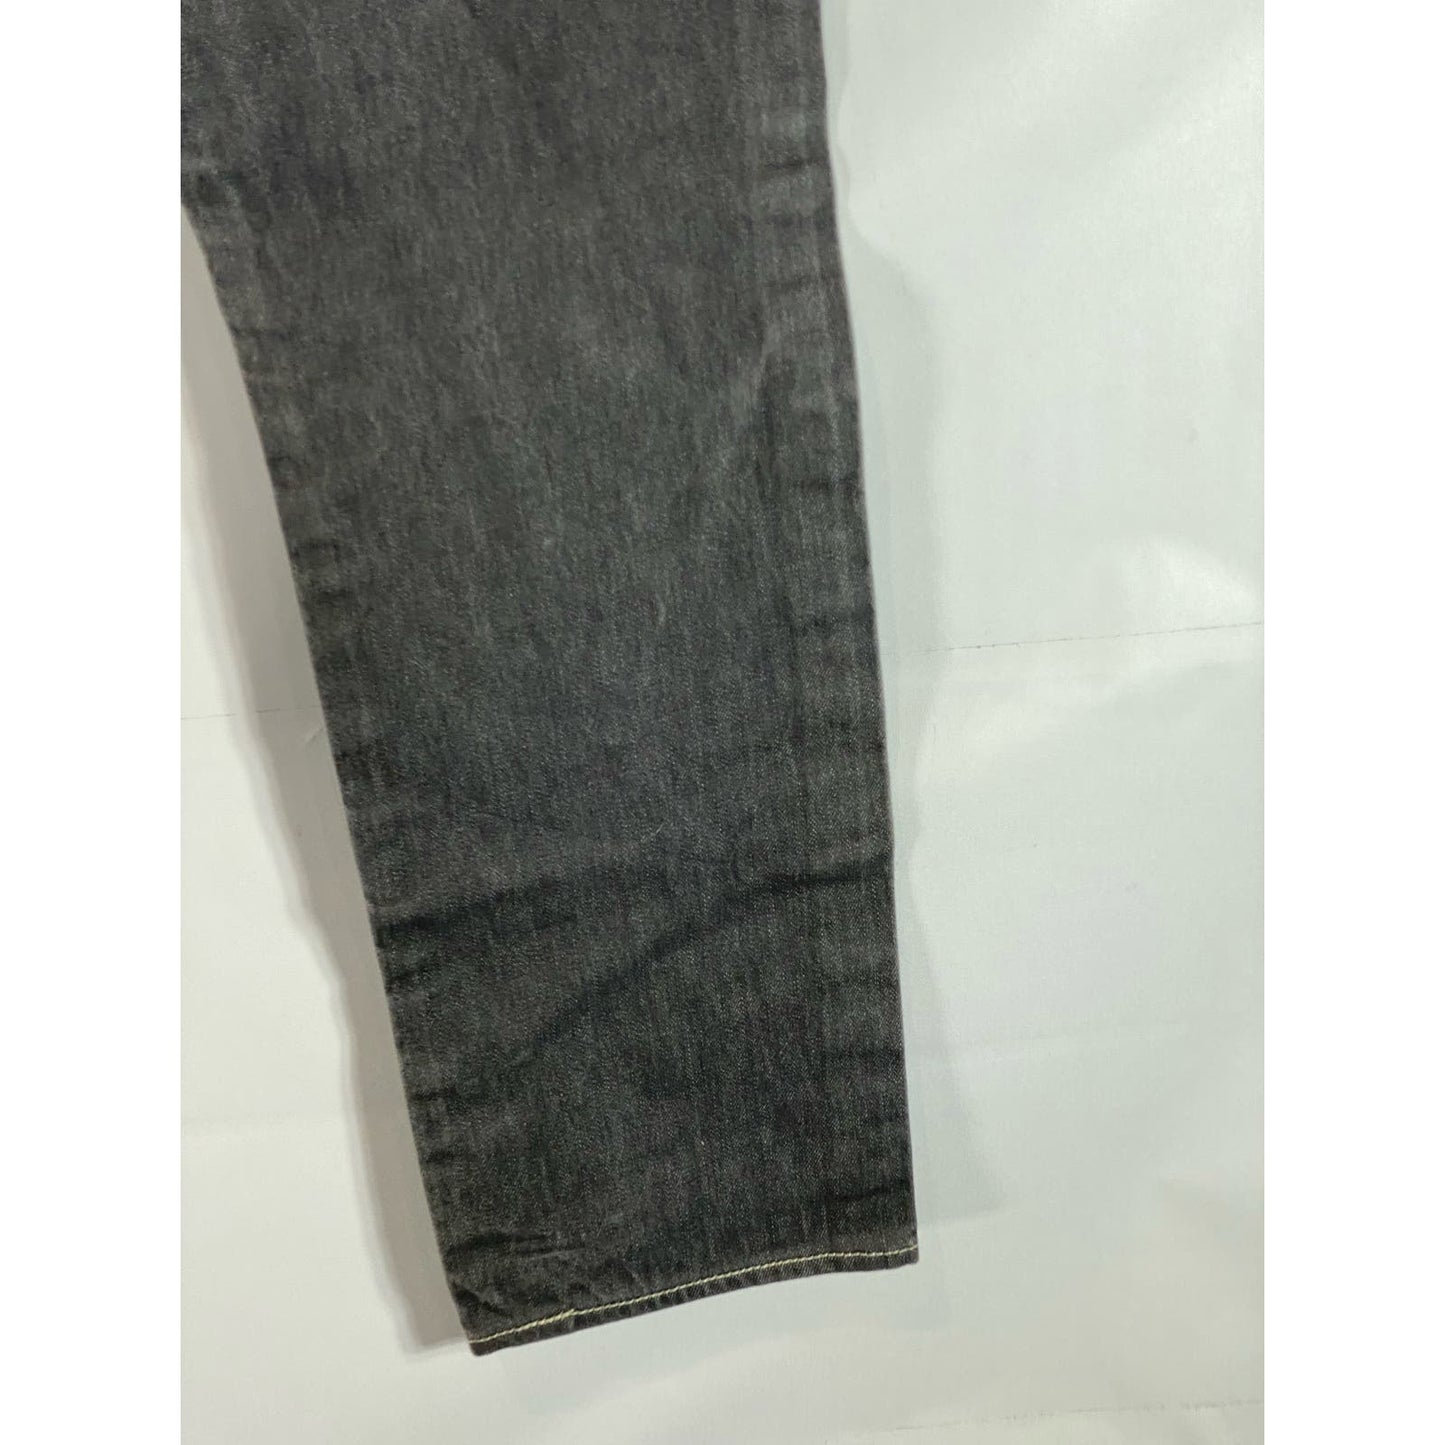 LEVI'S Men's Washed Black 501 Original fit Straight Leg Denim Jeans SZ 32X32